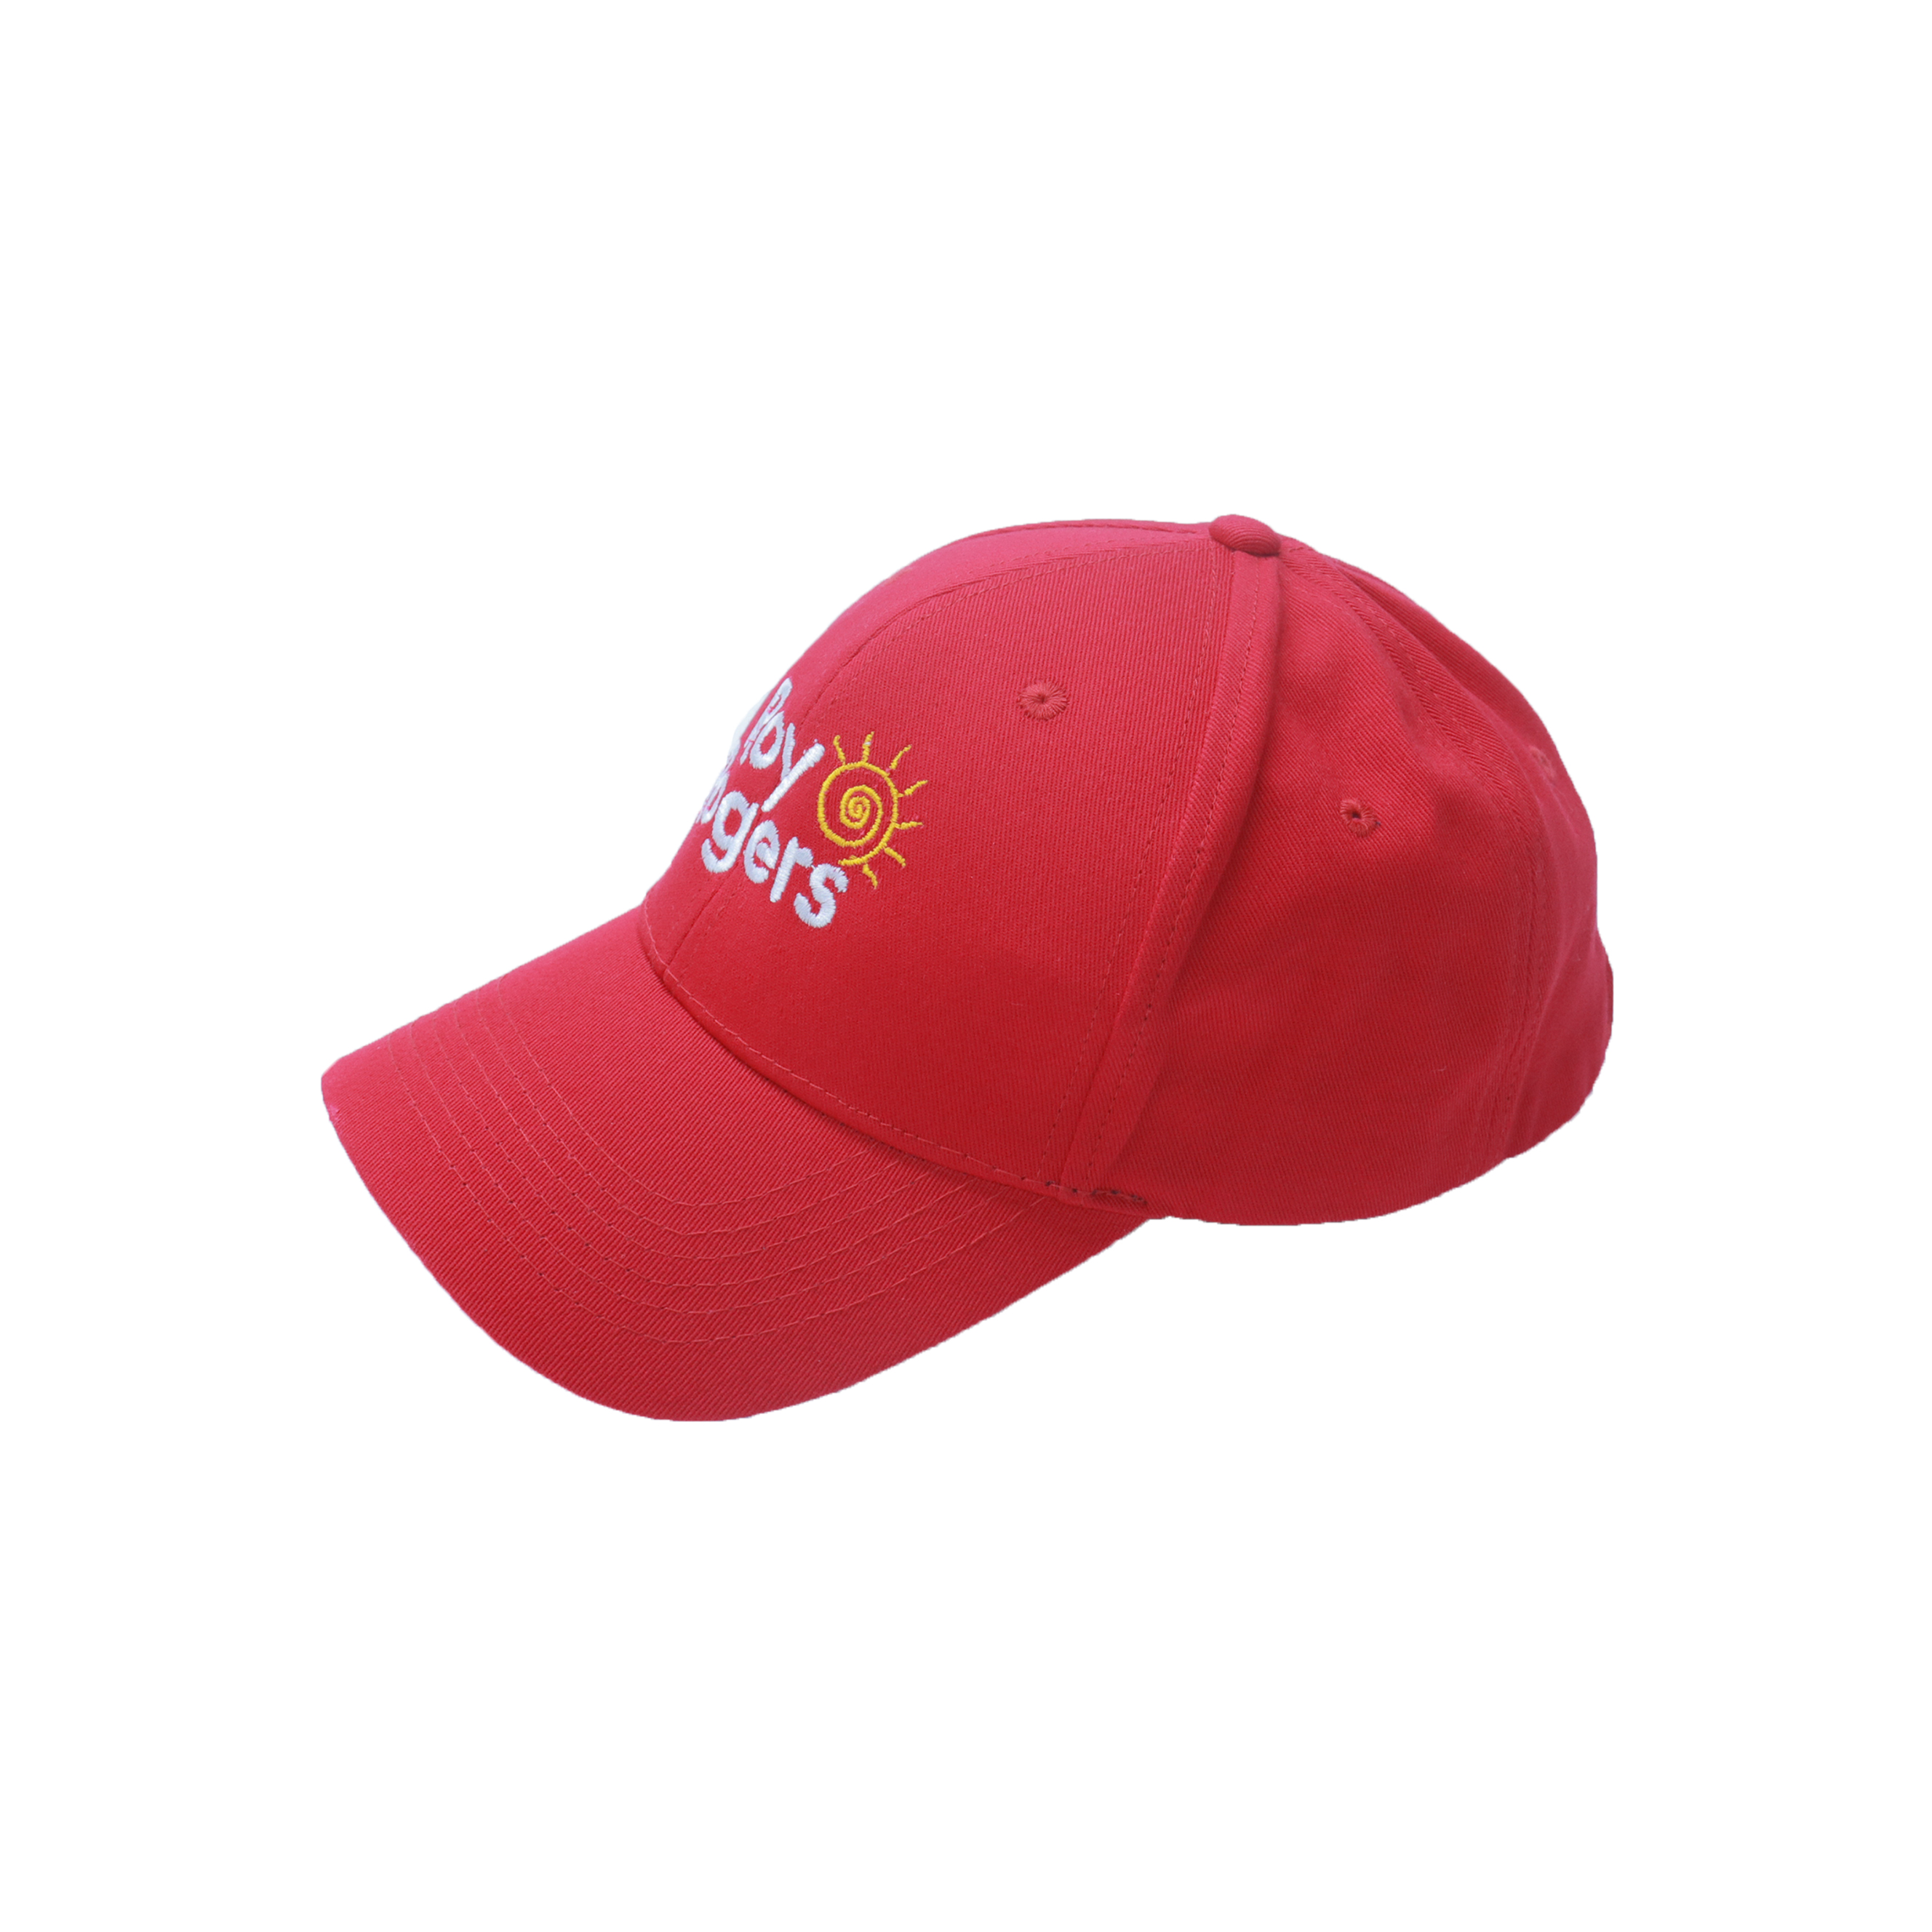 Индивидуальный логотип/цветная кепка для водителя доставки еды - могут быть фирменные кепки-001